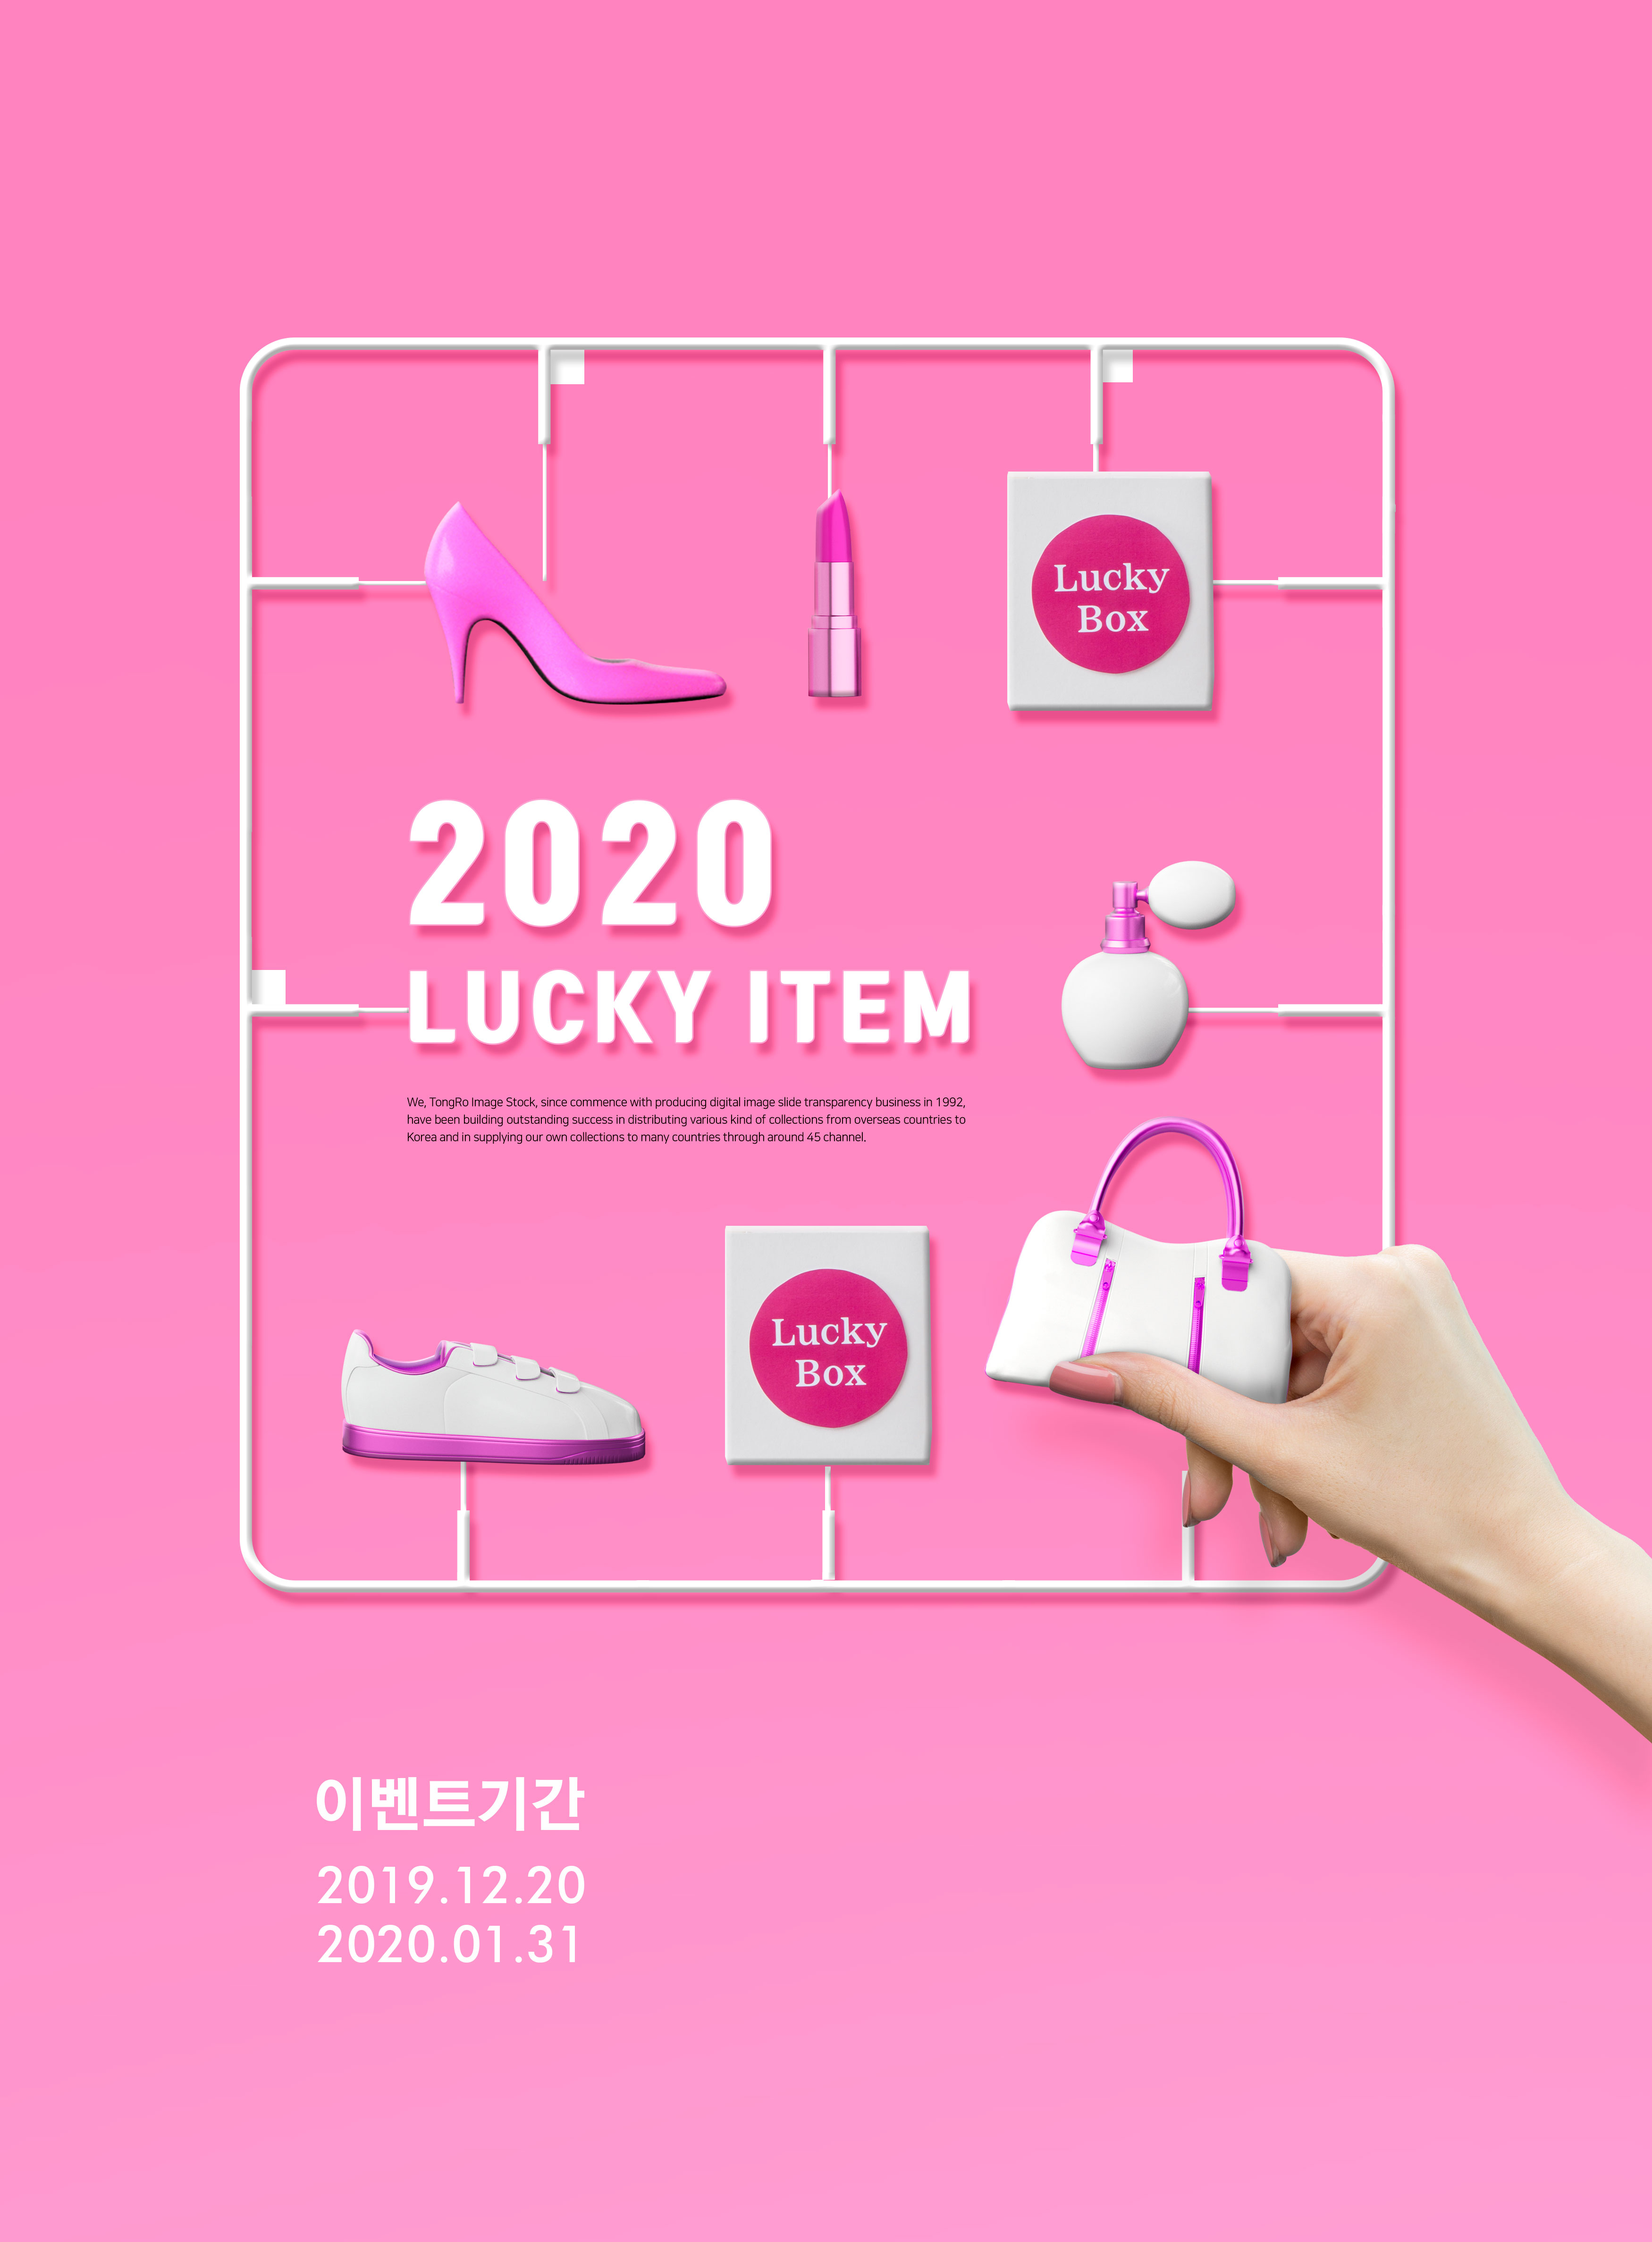 粉色主题女性购物促销活动推广海报PSD素材素材库精选素材插图